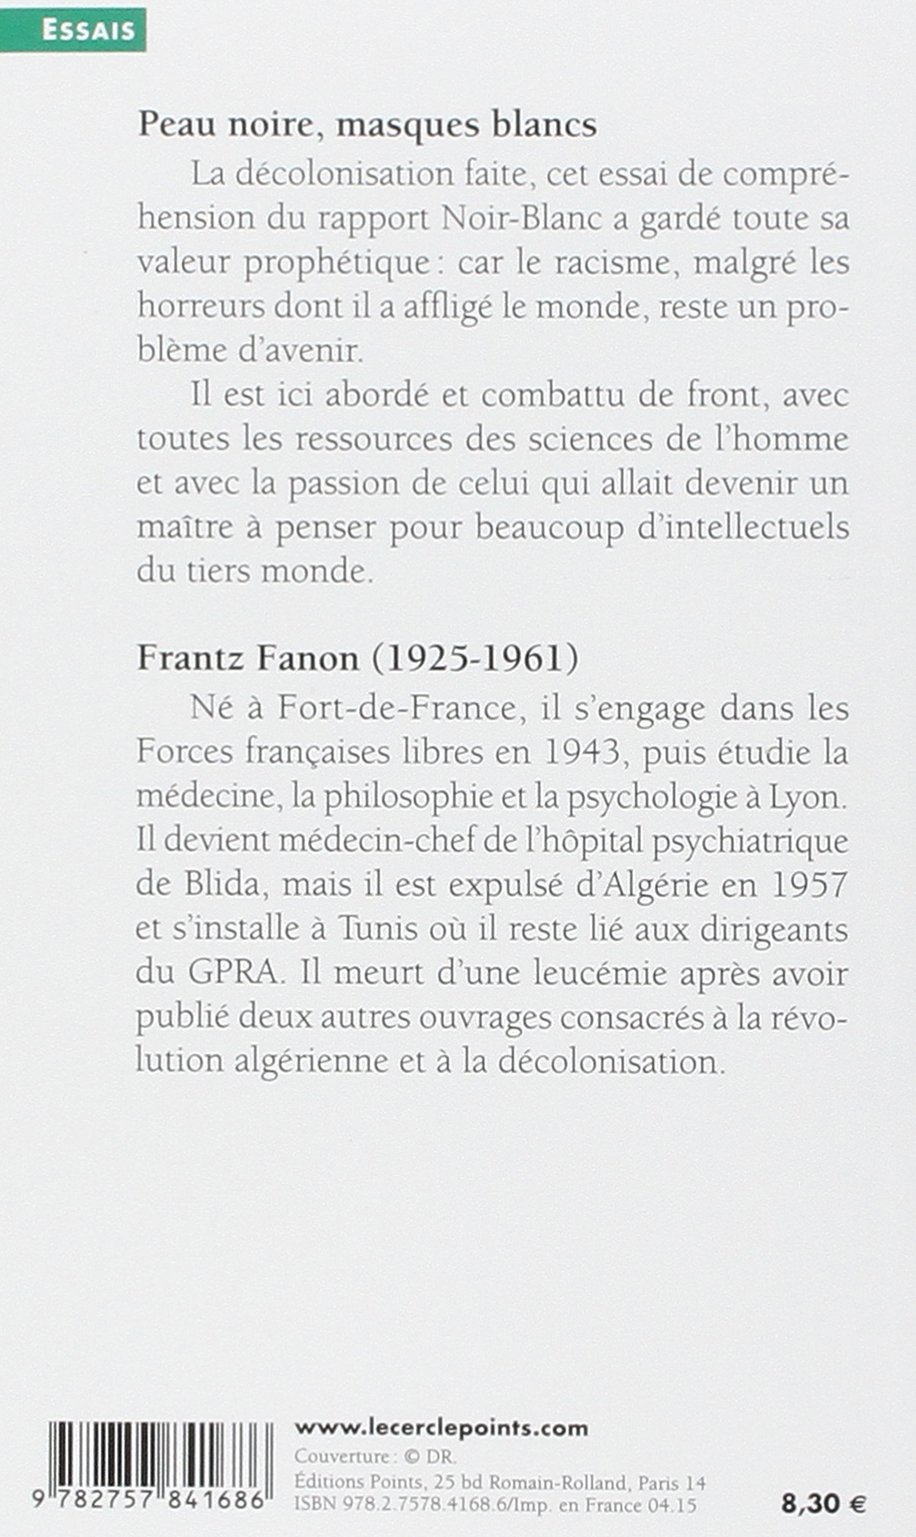 Peau noire, masques blancs Par Frantz Fanon, Essais, Sciences sociales